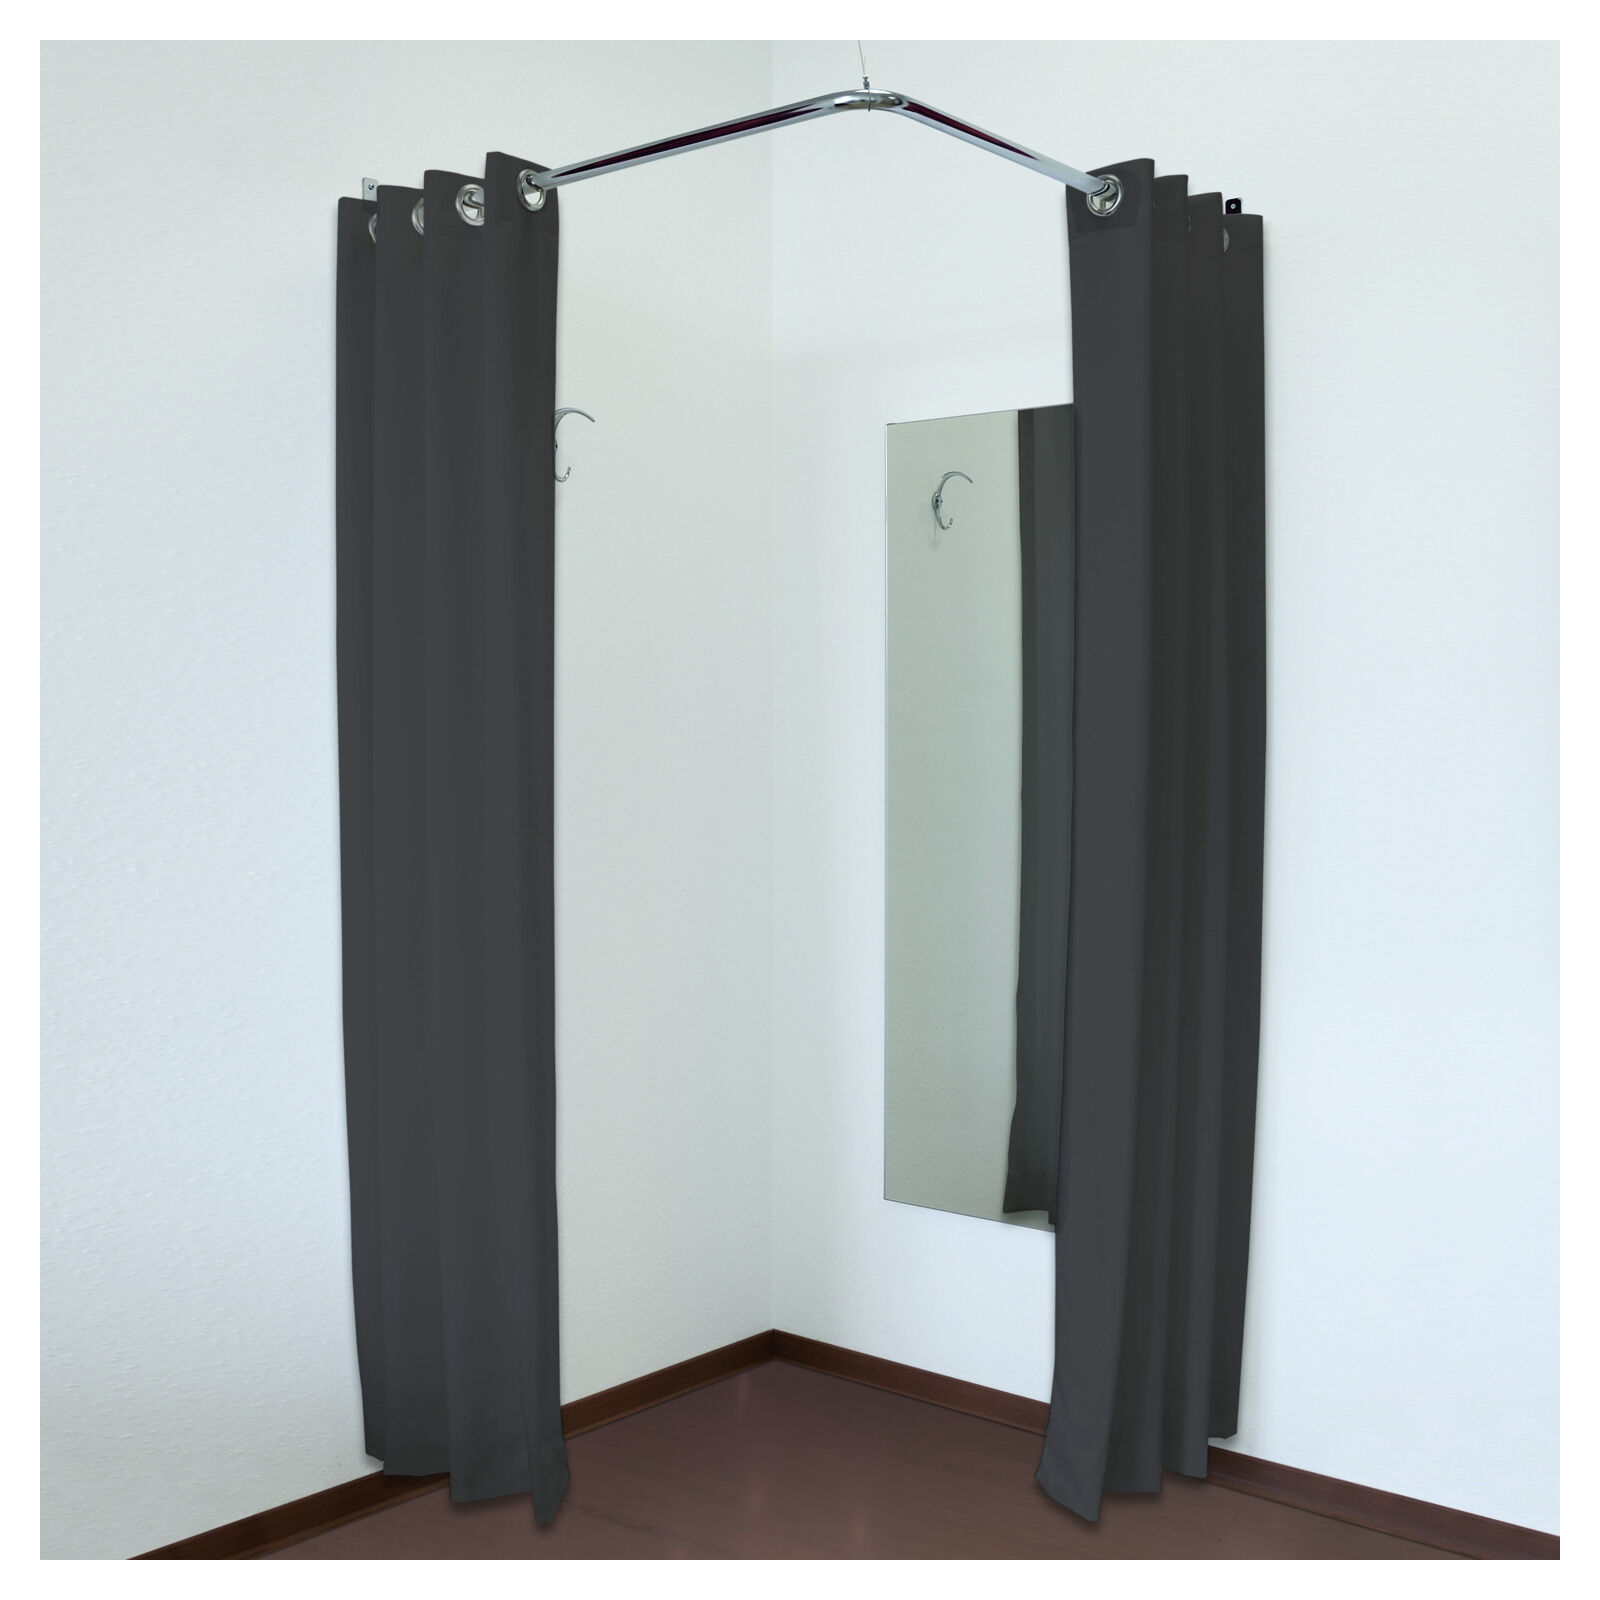 Eck Umkleidekabine mit zwei Vorhängen, Spiegel und Zubehör Bild 2